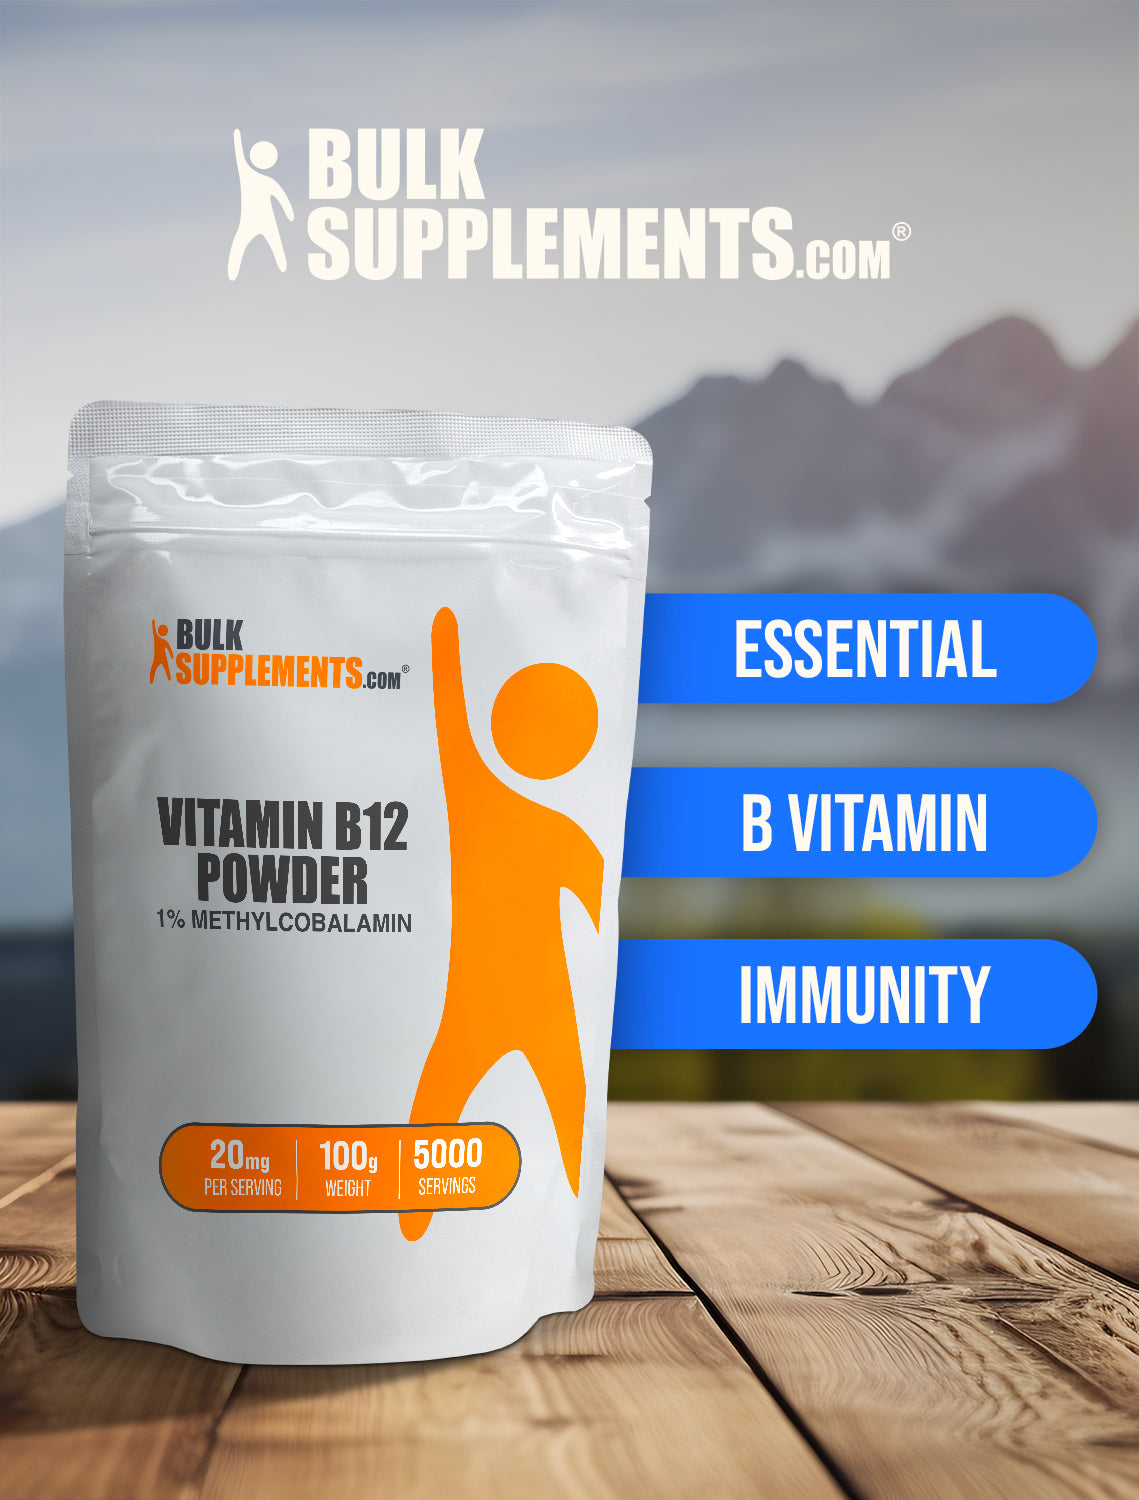 Vitamin B12 1% Methylcobalamin powder keyword image 100g